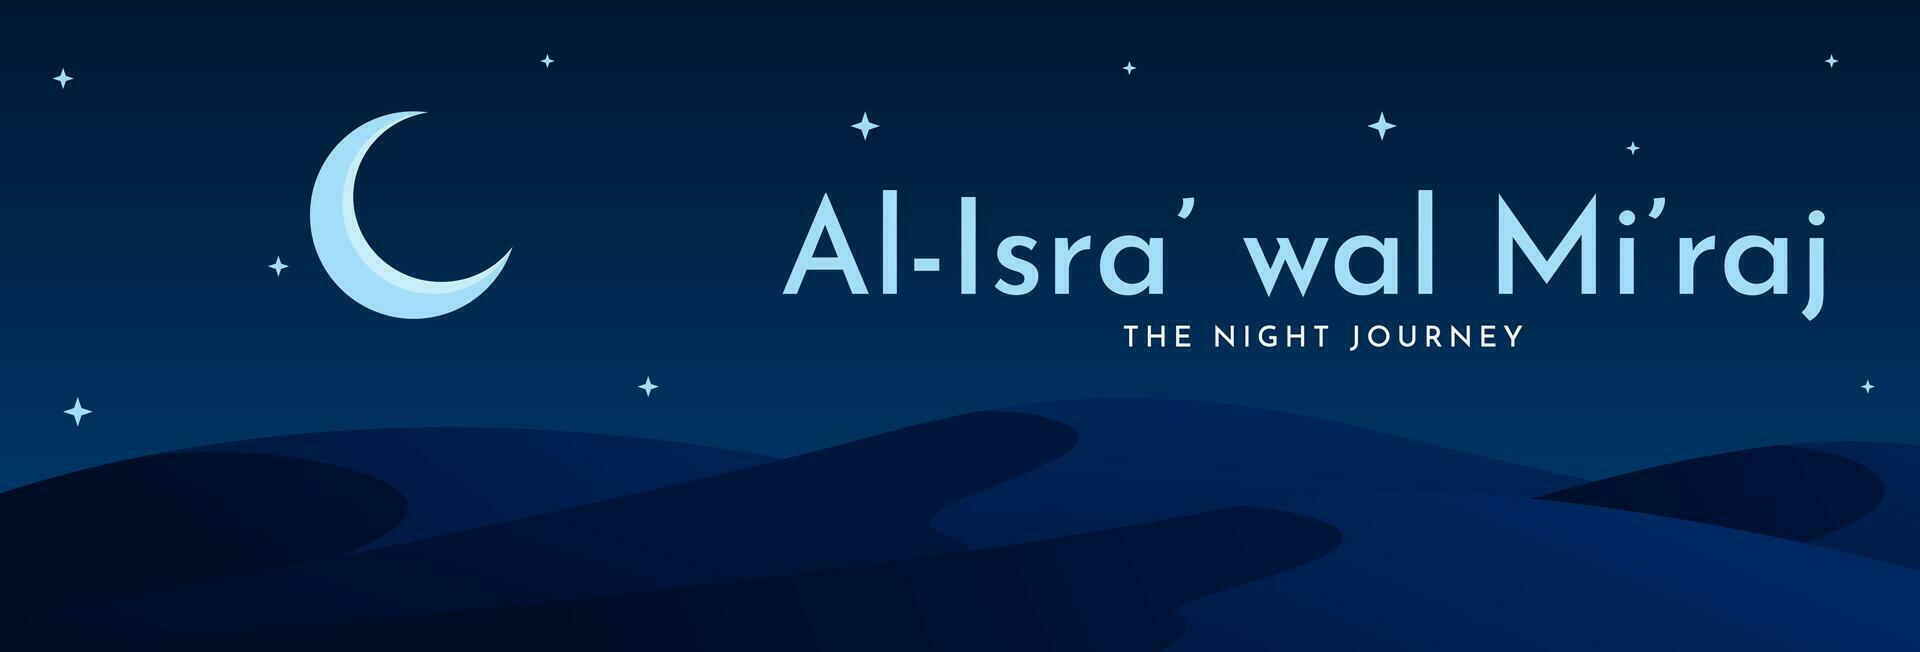 al-isra' wal mi'raj, il notte viaggio di il profeta Maometto sega. islamico sfondo design modello. vettore illustrazione